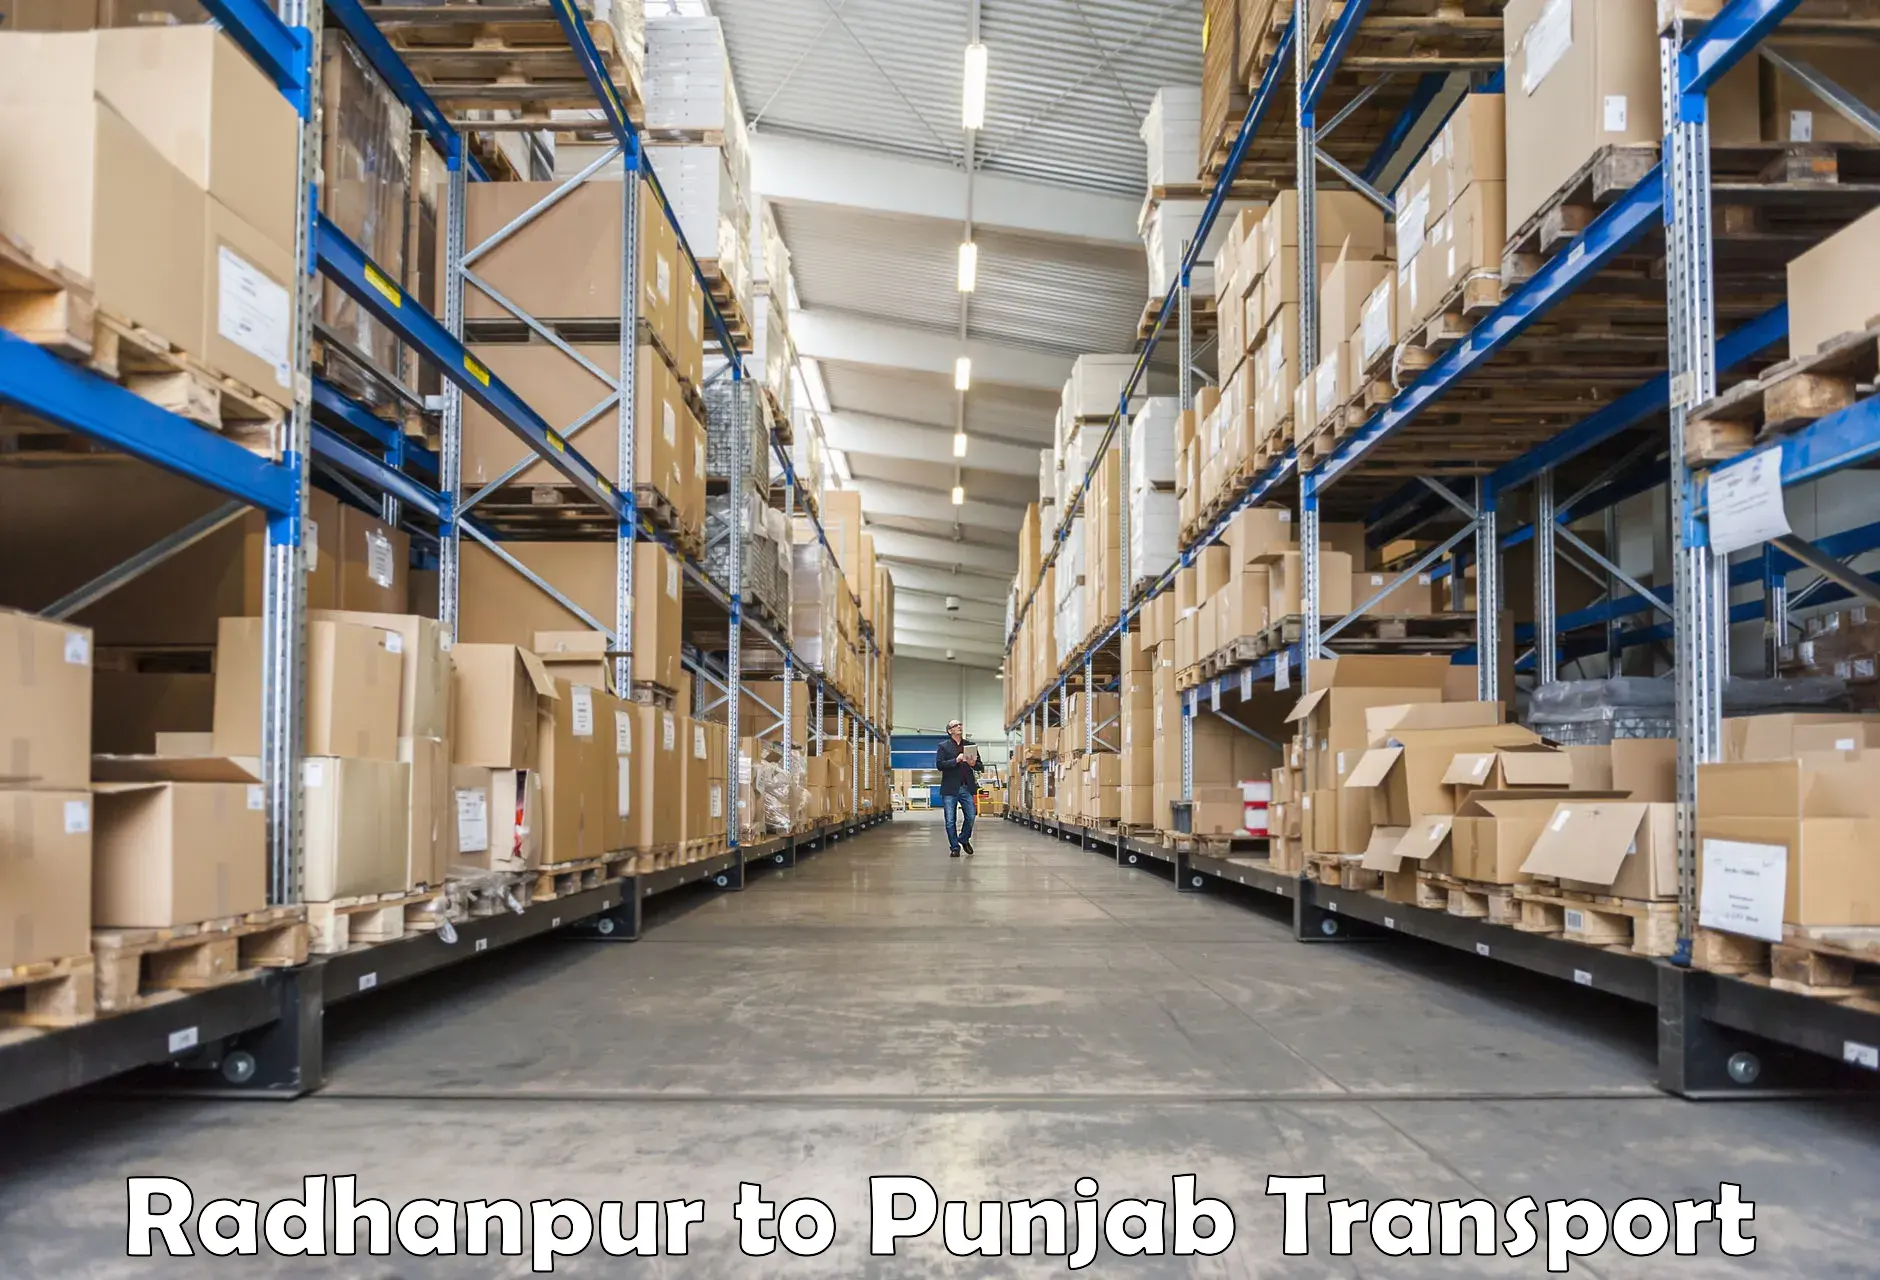 Online transport Radhanpur to Jalandhar